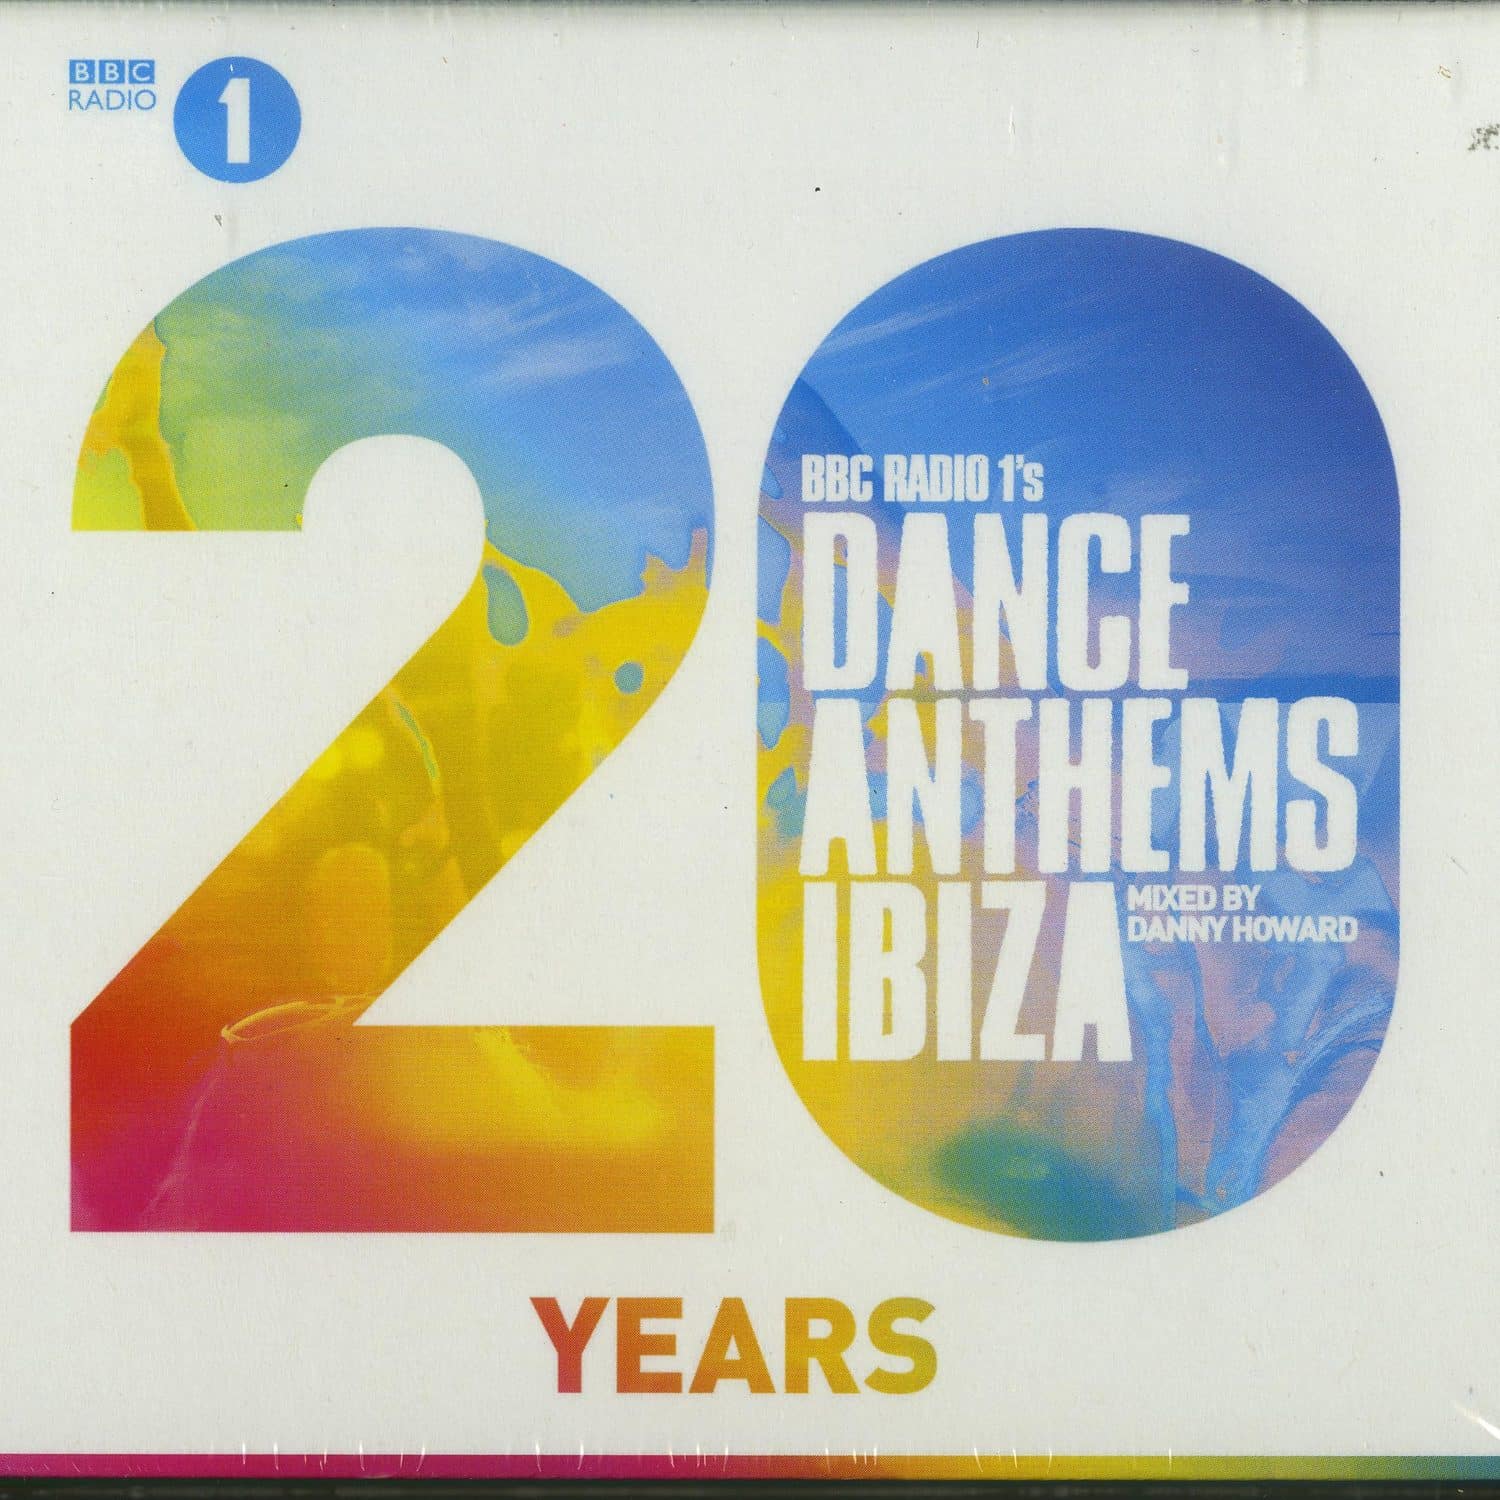 BBC Radio 1 Presents - DANCE ANTHEMS IBIZA 20 YEARS 